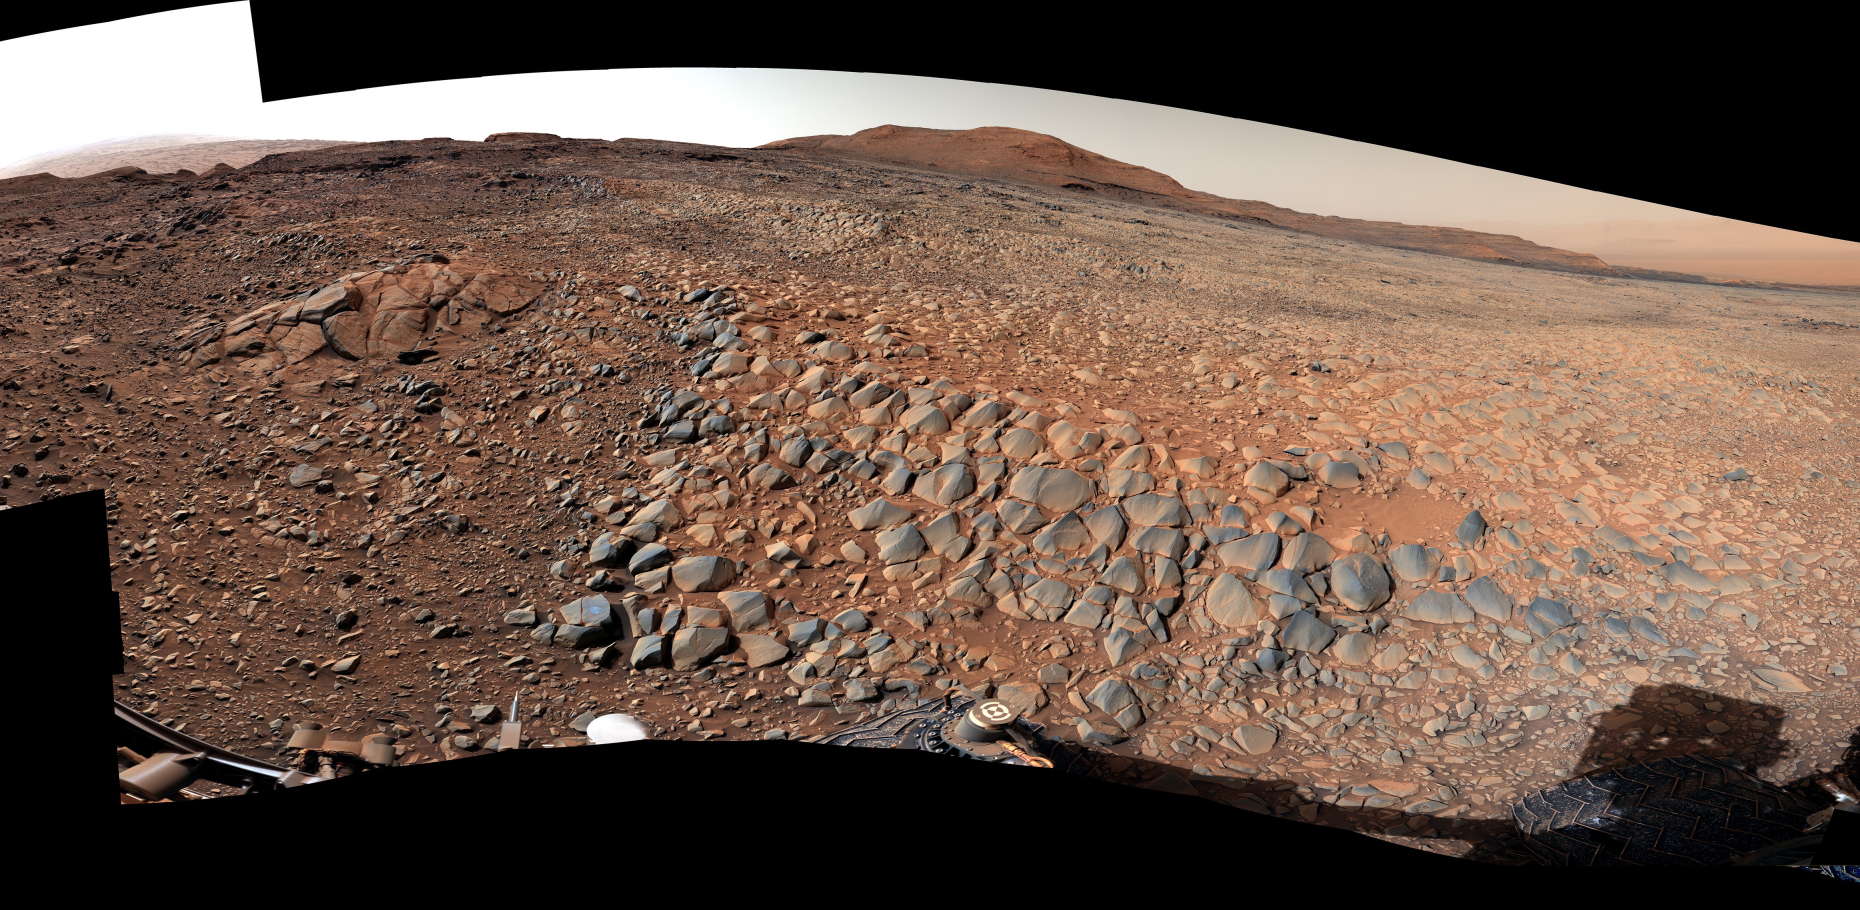 NASA-in rover Curiosity koristio je svoju kameru (Mastcam) kako bi snimio ovu panoramu od 360 stupnjeva 23. ožujka 2022. Na slici se mogu vidjeti oštre stijene koje bi mogle oštetiti roverove kotače, a koje NASA-in tim – zbog izgleda koji podsjeća na ljuskavi pokrov – nazivaju „aligatorska leđa“ (©NASA/JPL-Caltech/MSSS).